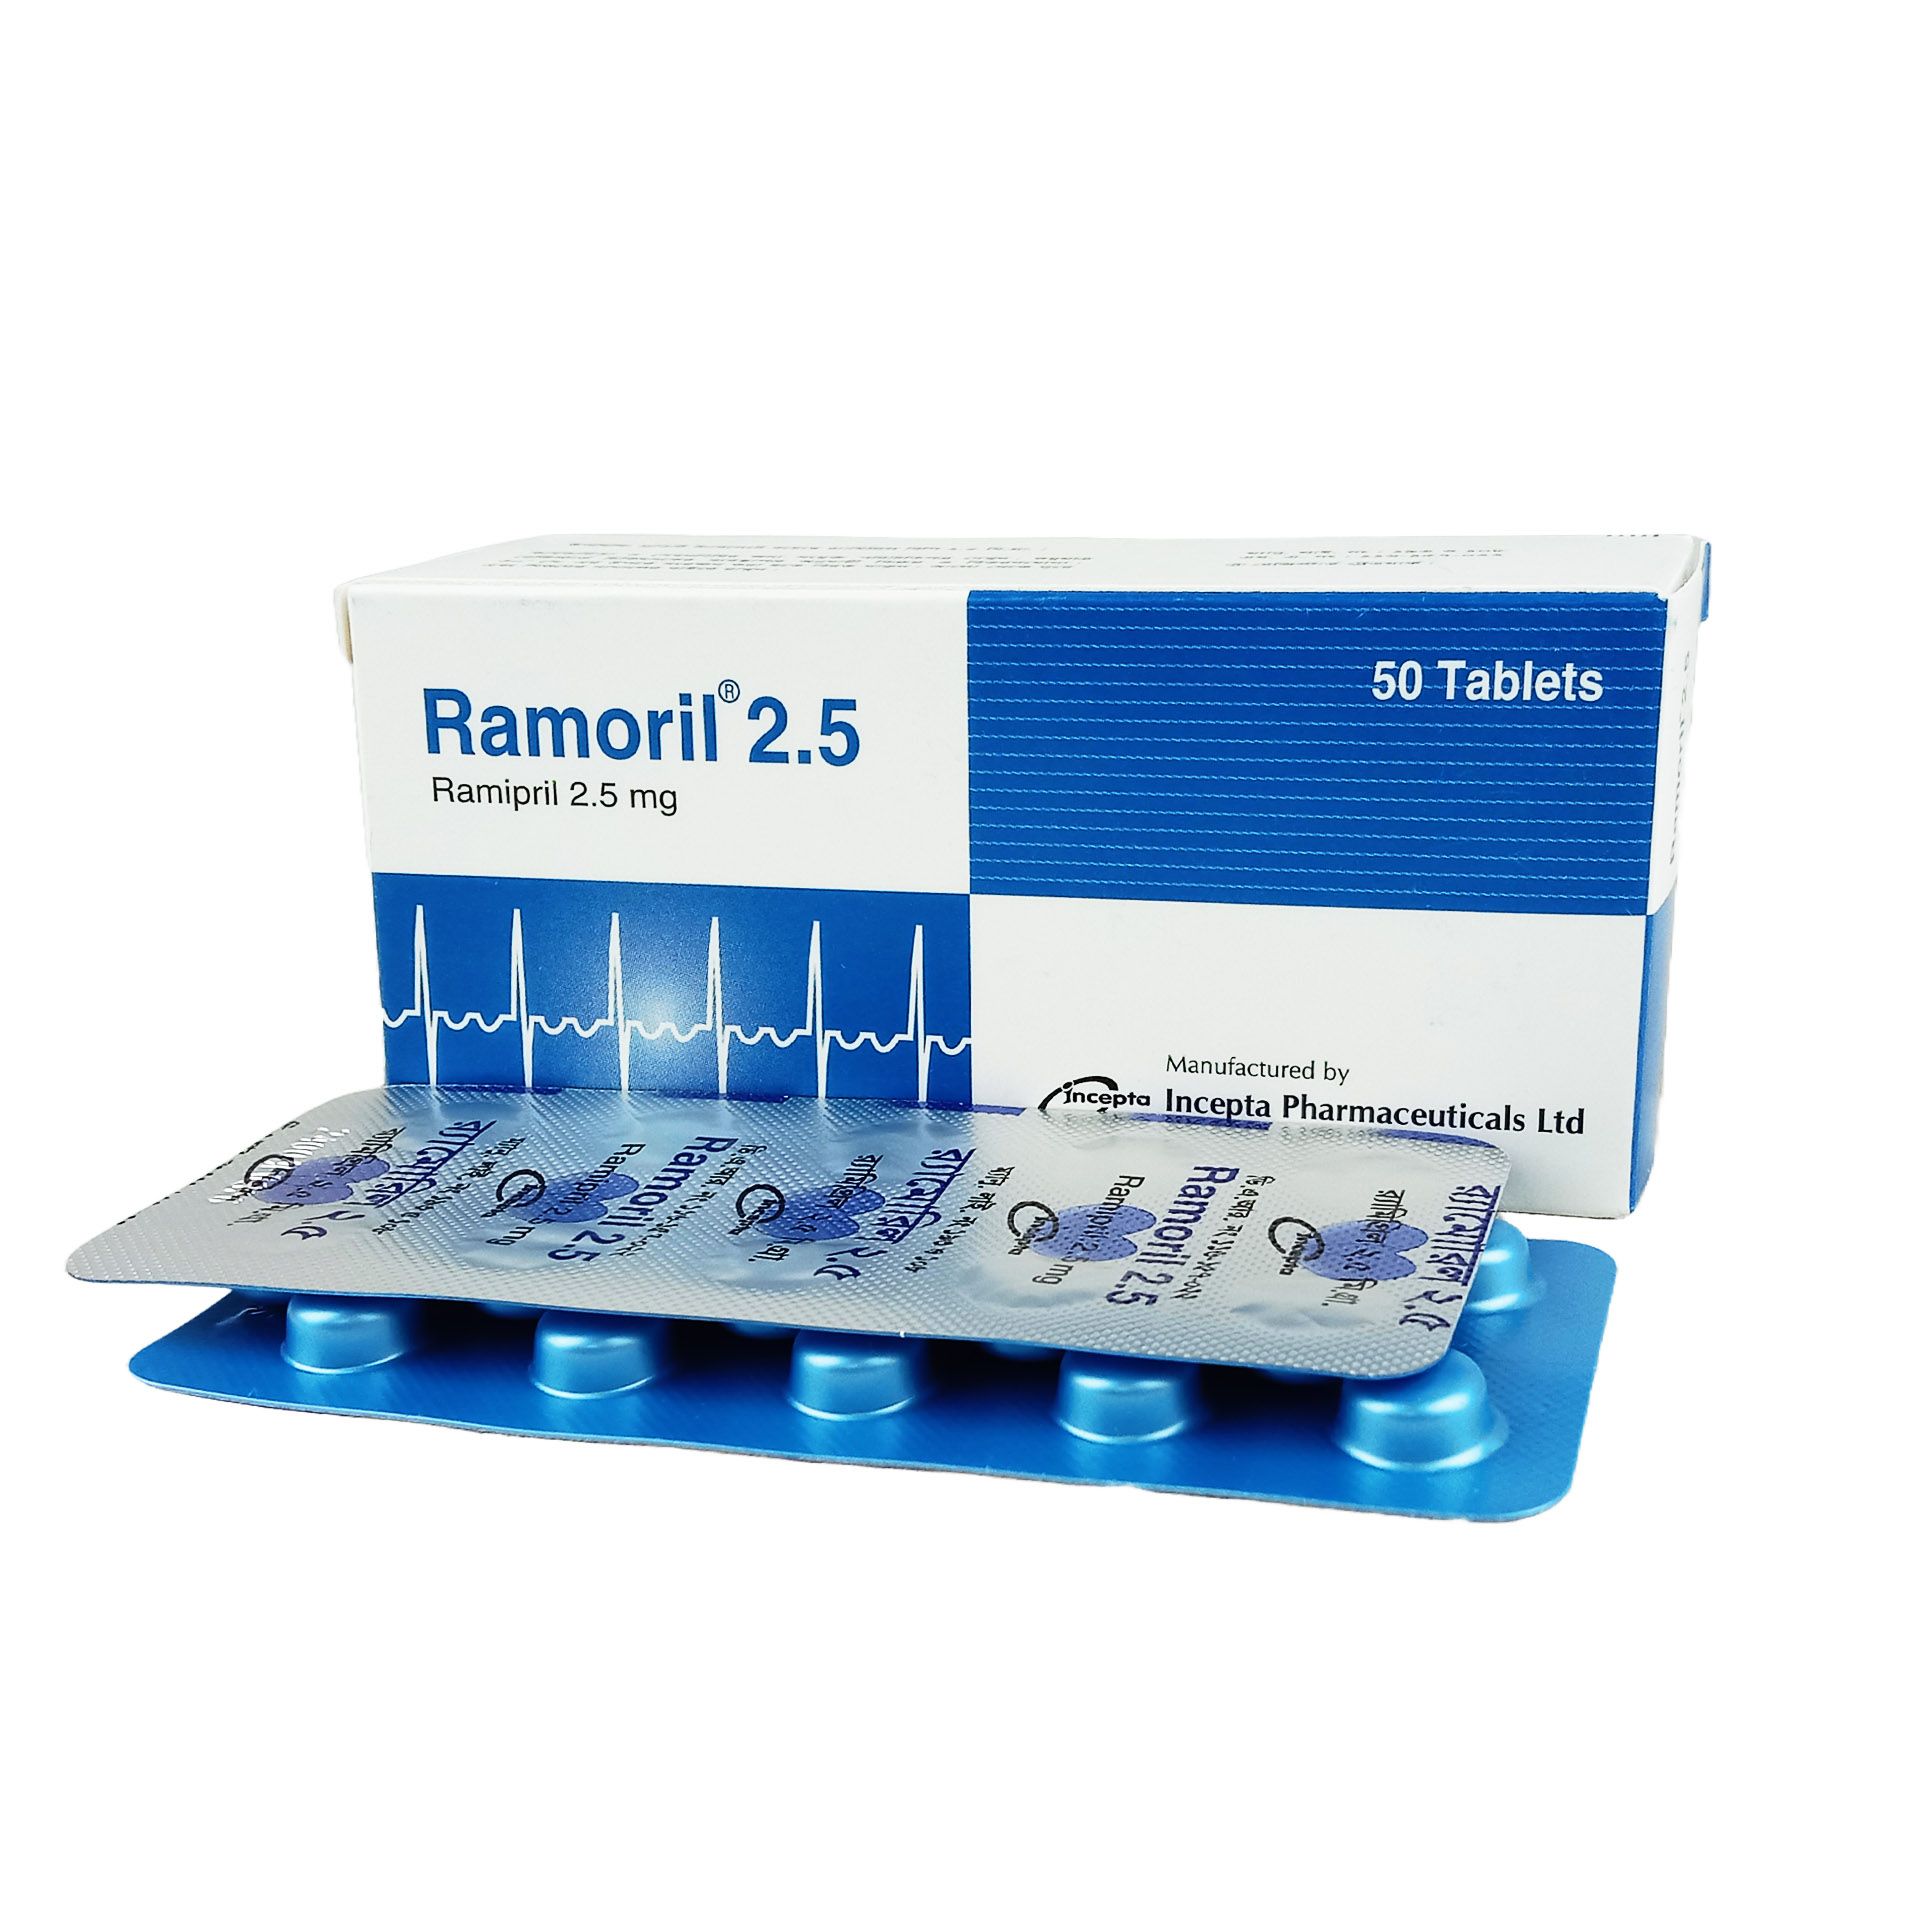 Ramoril 2.5 2.5mg tablet